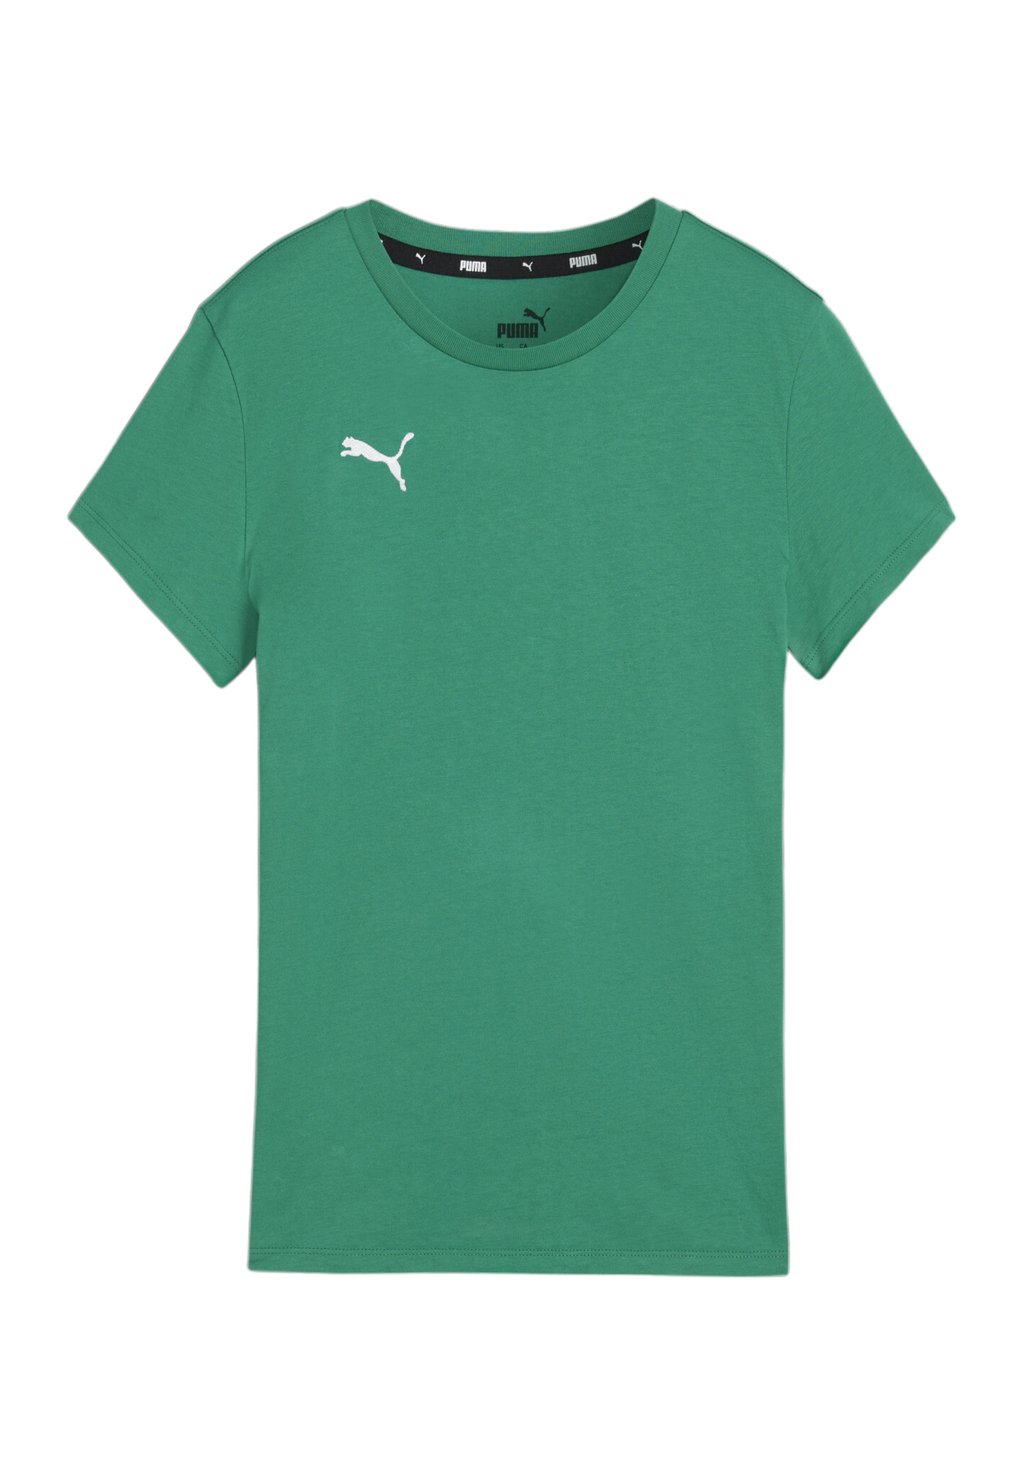 Спортивная футболка TEAMGOAL CASUALS Puma, цвет gruenweiss футболка базовая puma цвет gruenweiss